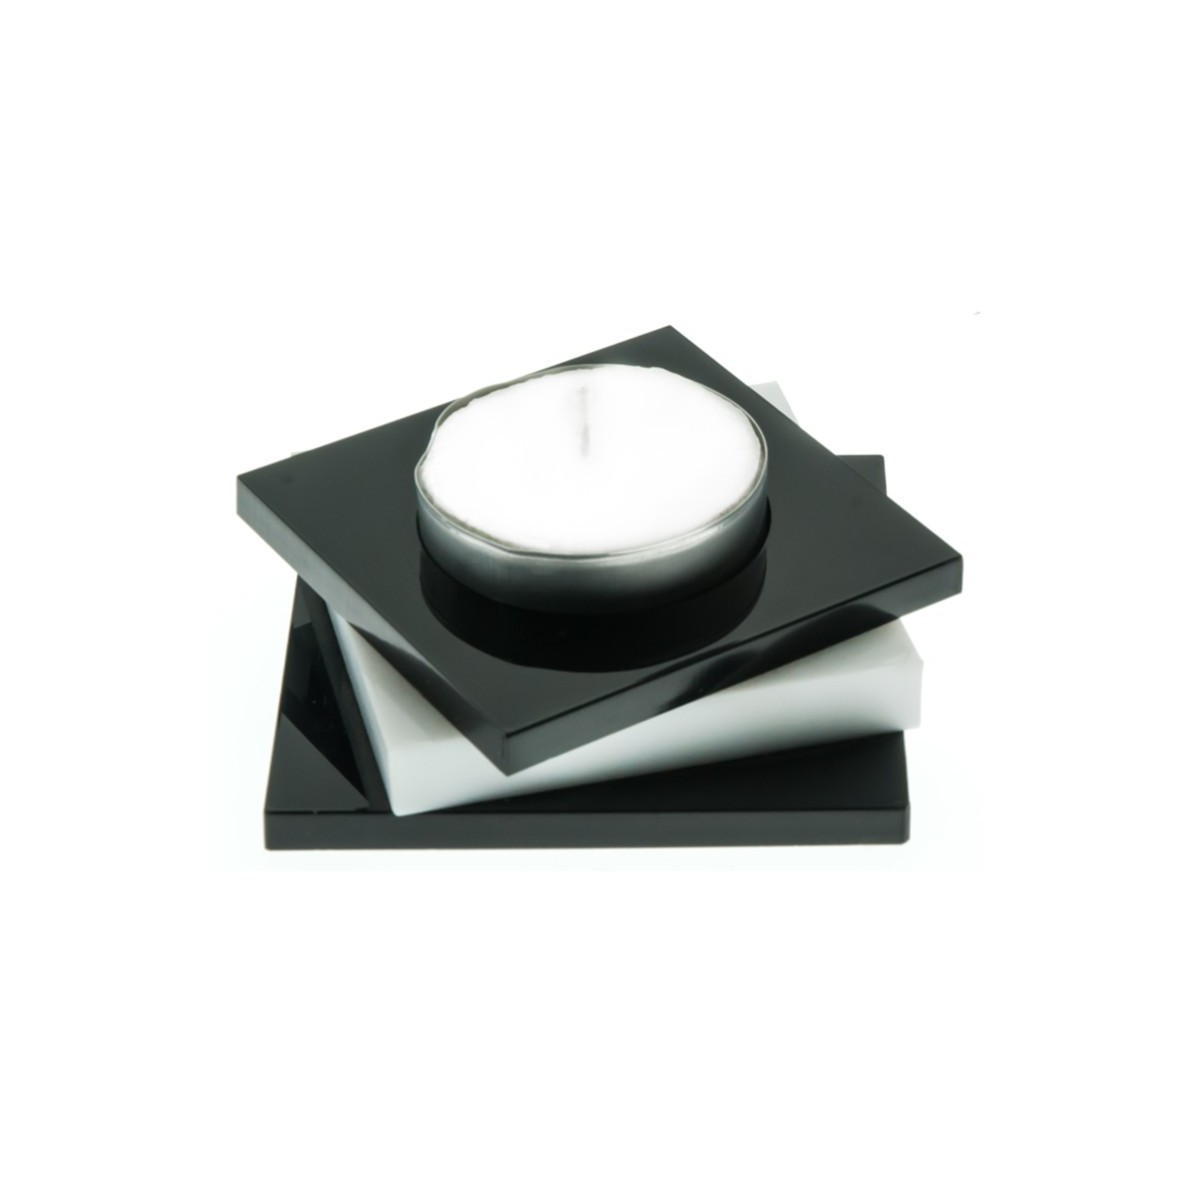 E-080 PCN-A - Porta candele in plexiglass colorato A